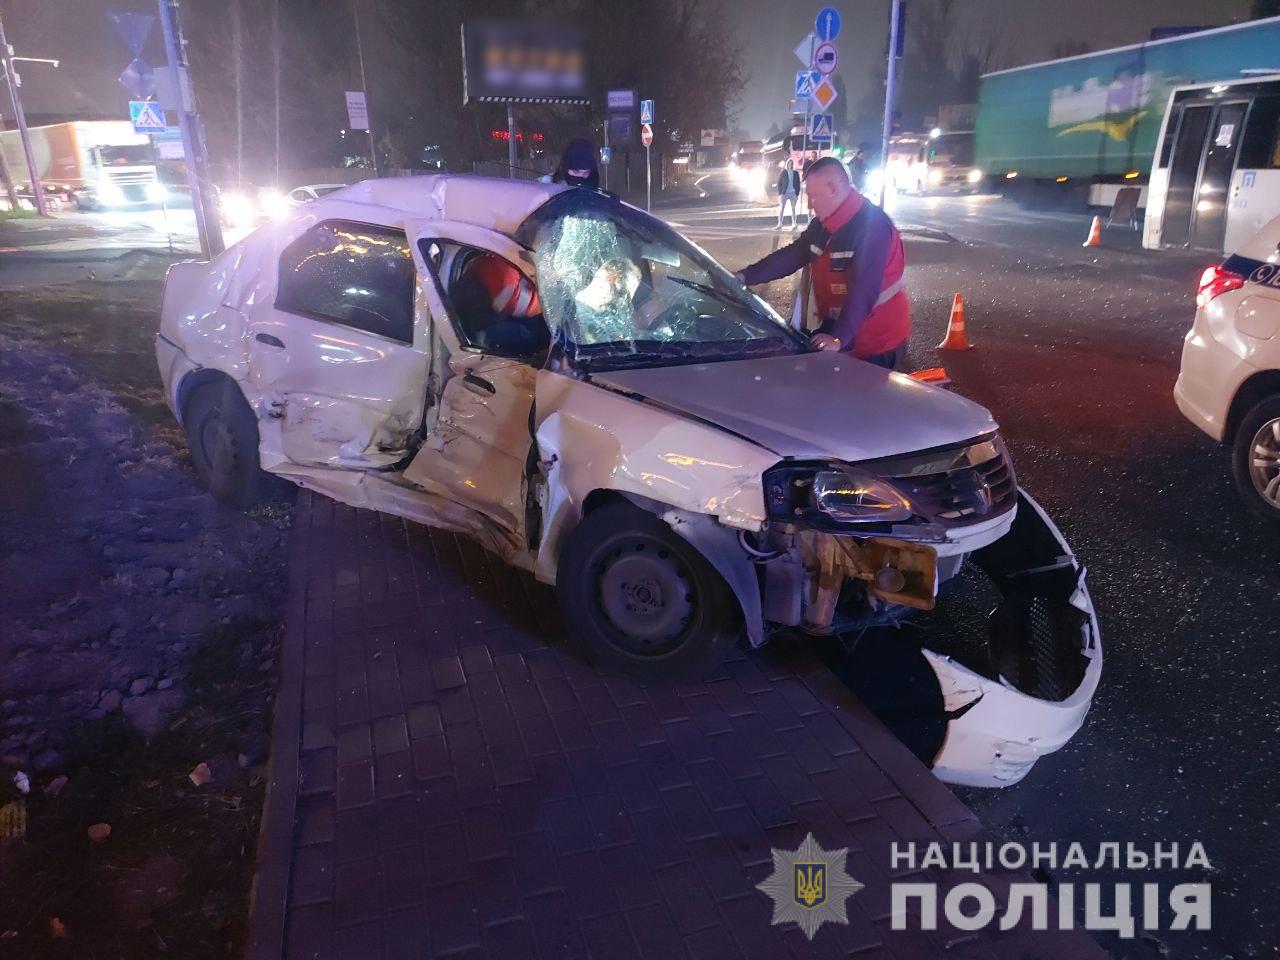 Под Киевом произошло смертельное ДТП. Автомобиль Renault на высокой скорости врезался в автобус (видео)